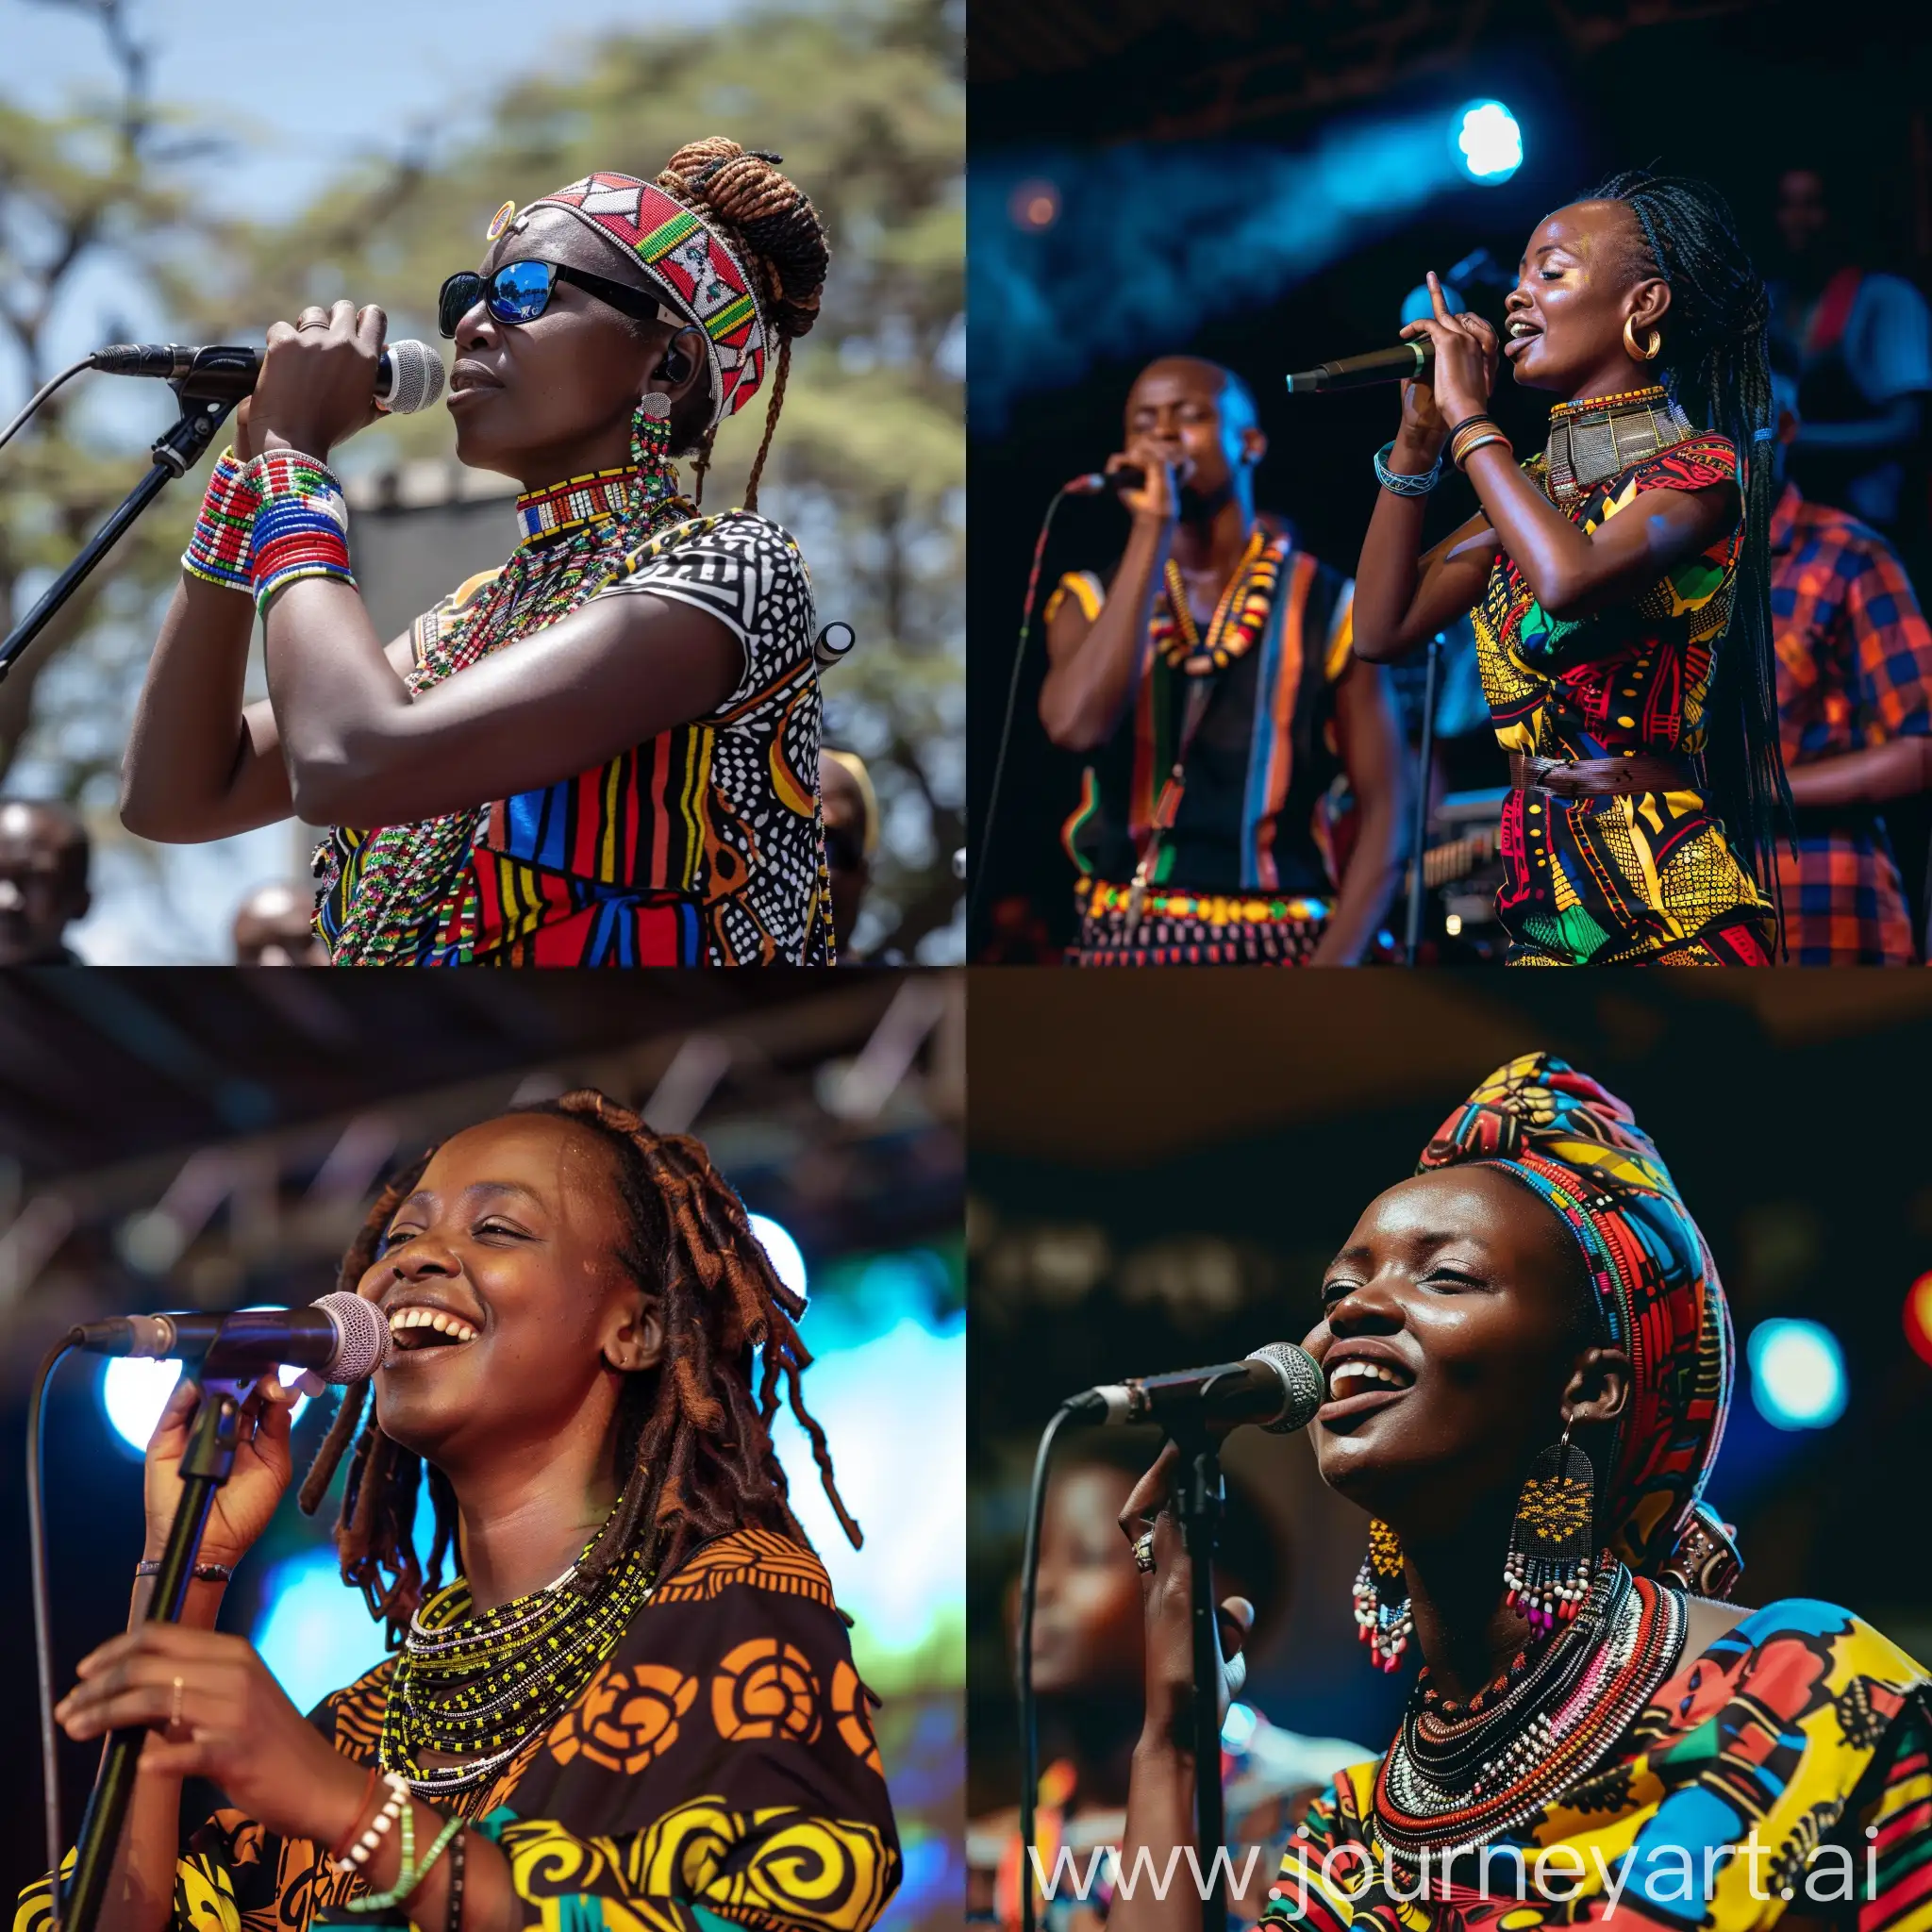 Vibrant-Nairobi-Arts-and-Music-Festival-Scene